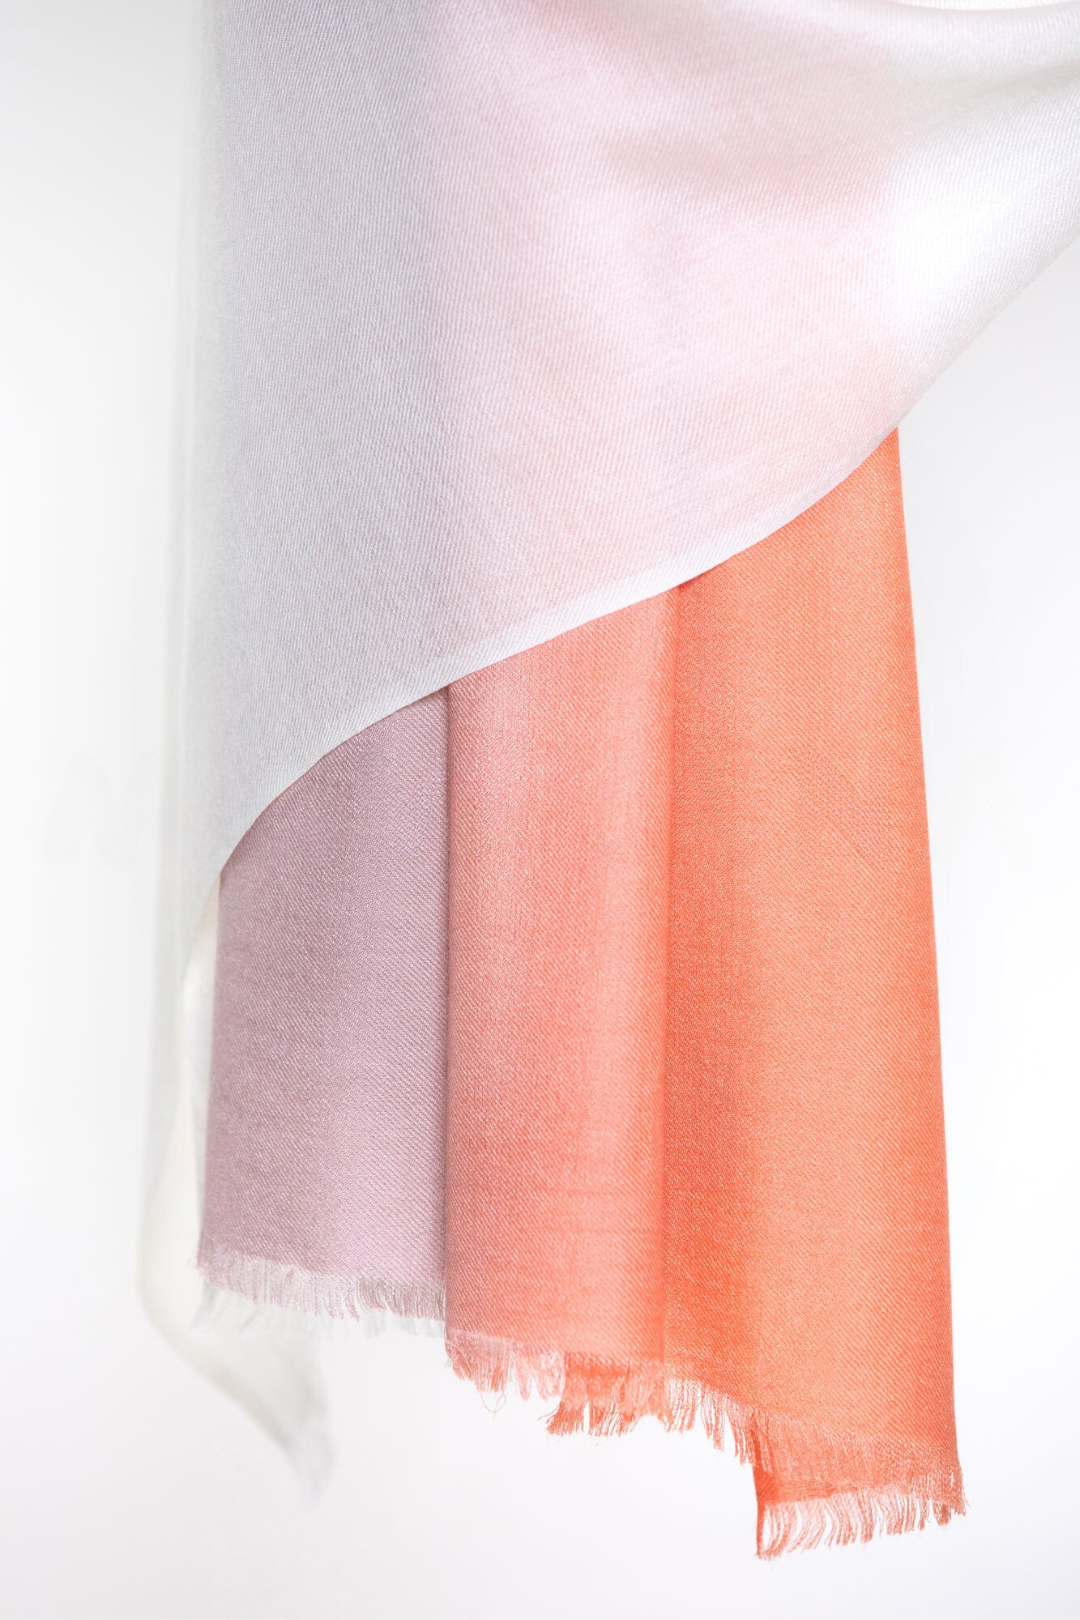 Ombre Three Colors Printed Mo-shmere Shawls - Peach Puff Cream